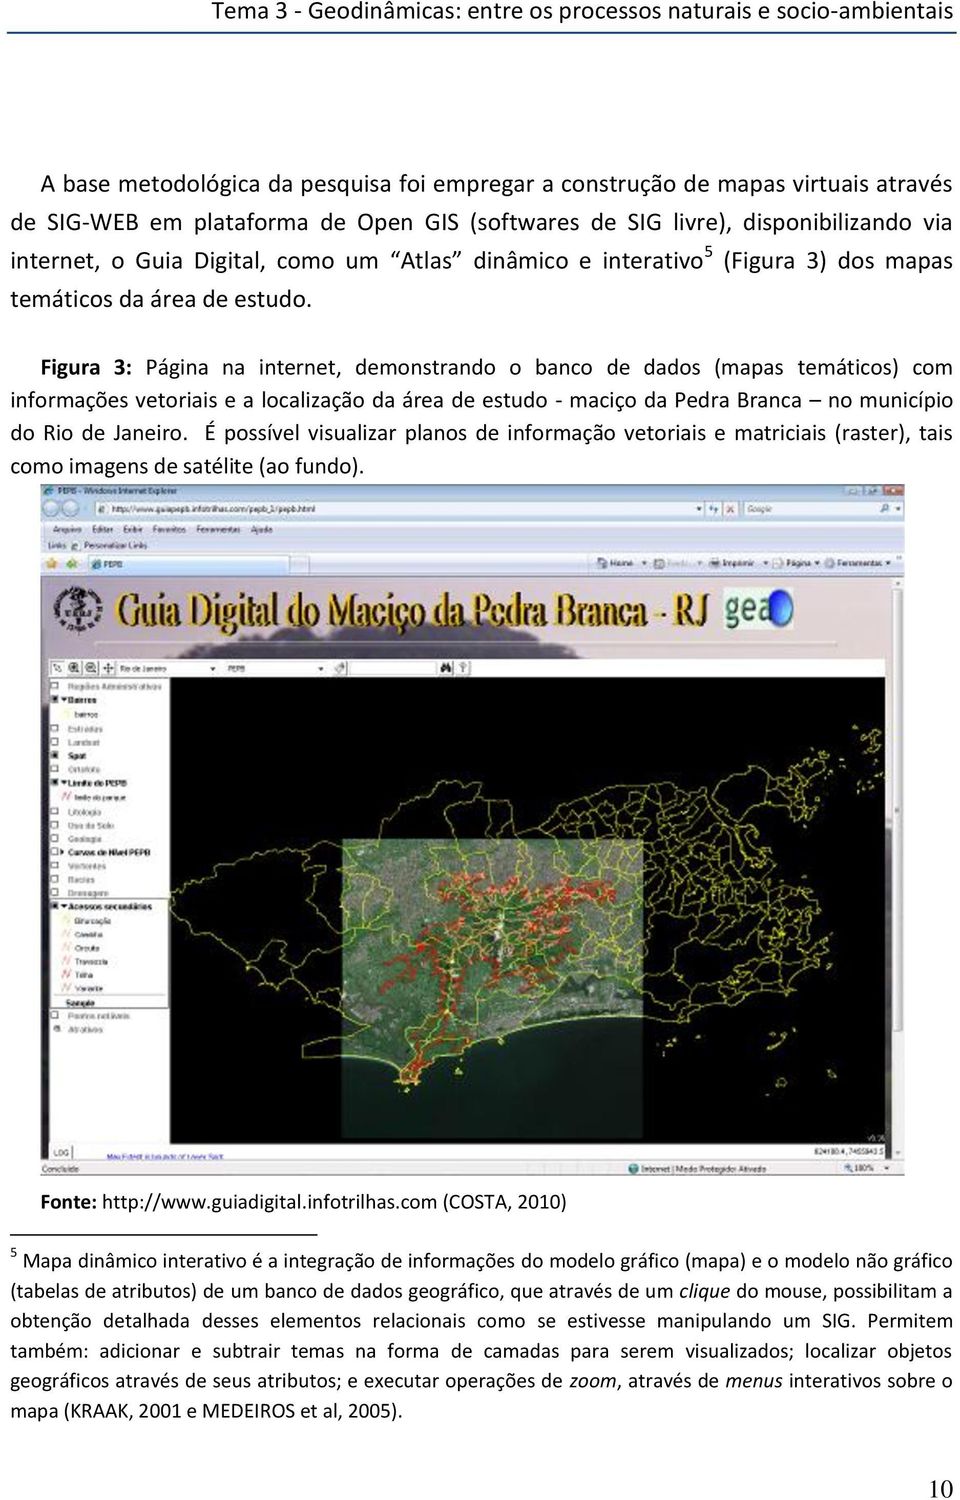 Figura 3: Página na internet, demonstrando o banco de dados (mapas temáticos) com informações vetoriais e a localização da área de estudo - maciço da Pedra Branca no município do Rio de Janeiro.